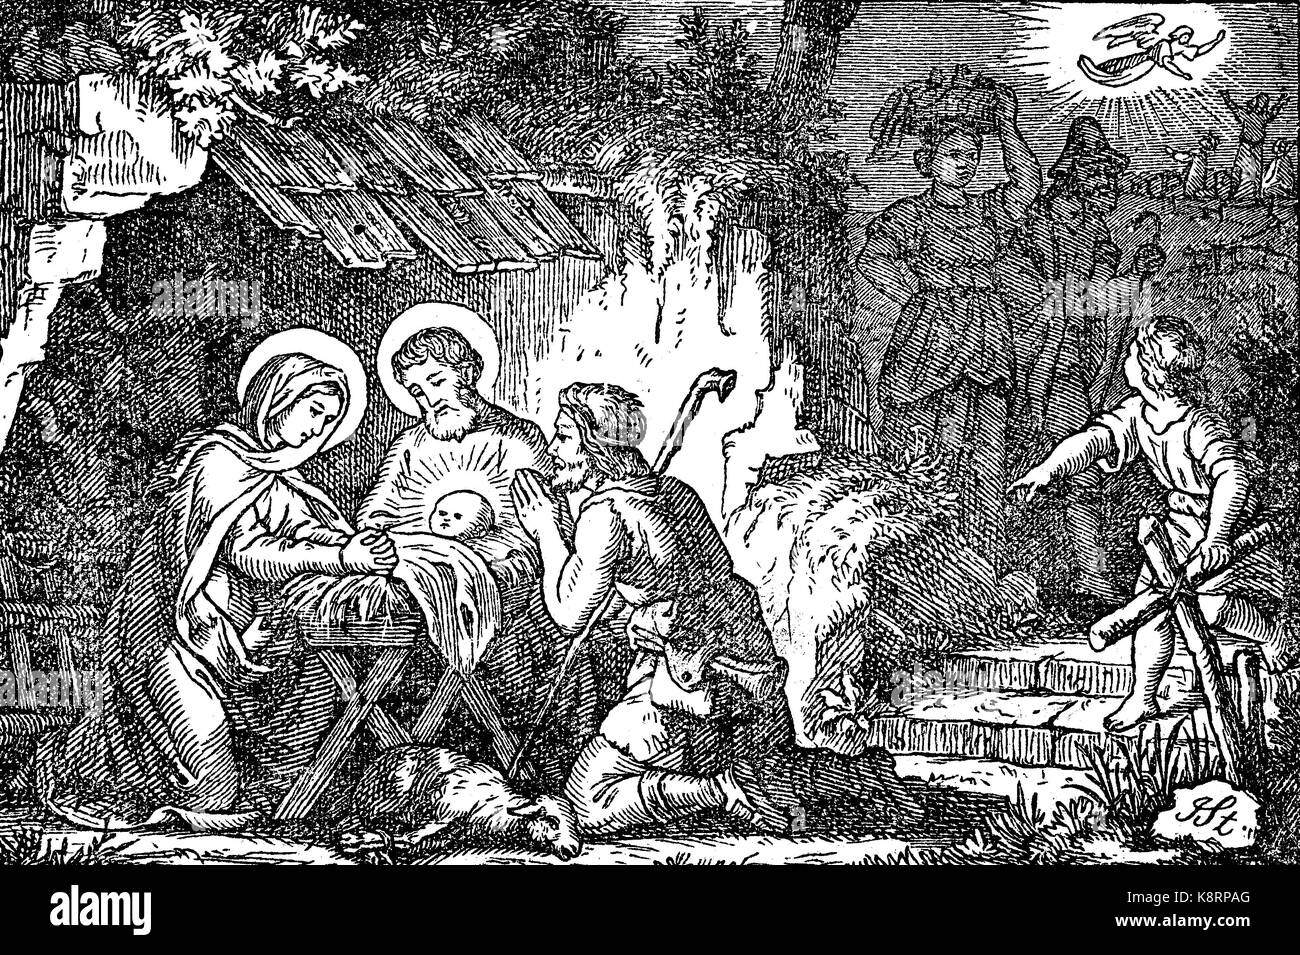 Adoration des bergers, dans la nativité de Jésus dans l'art, est une scène dans laquelle les bergers sont près de témoins de la naissance de Jésus à Bethléem, l'amélioration numérique reproduction d'une gravure sur bois, publié dans le 19e siècle Banque D'Images